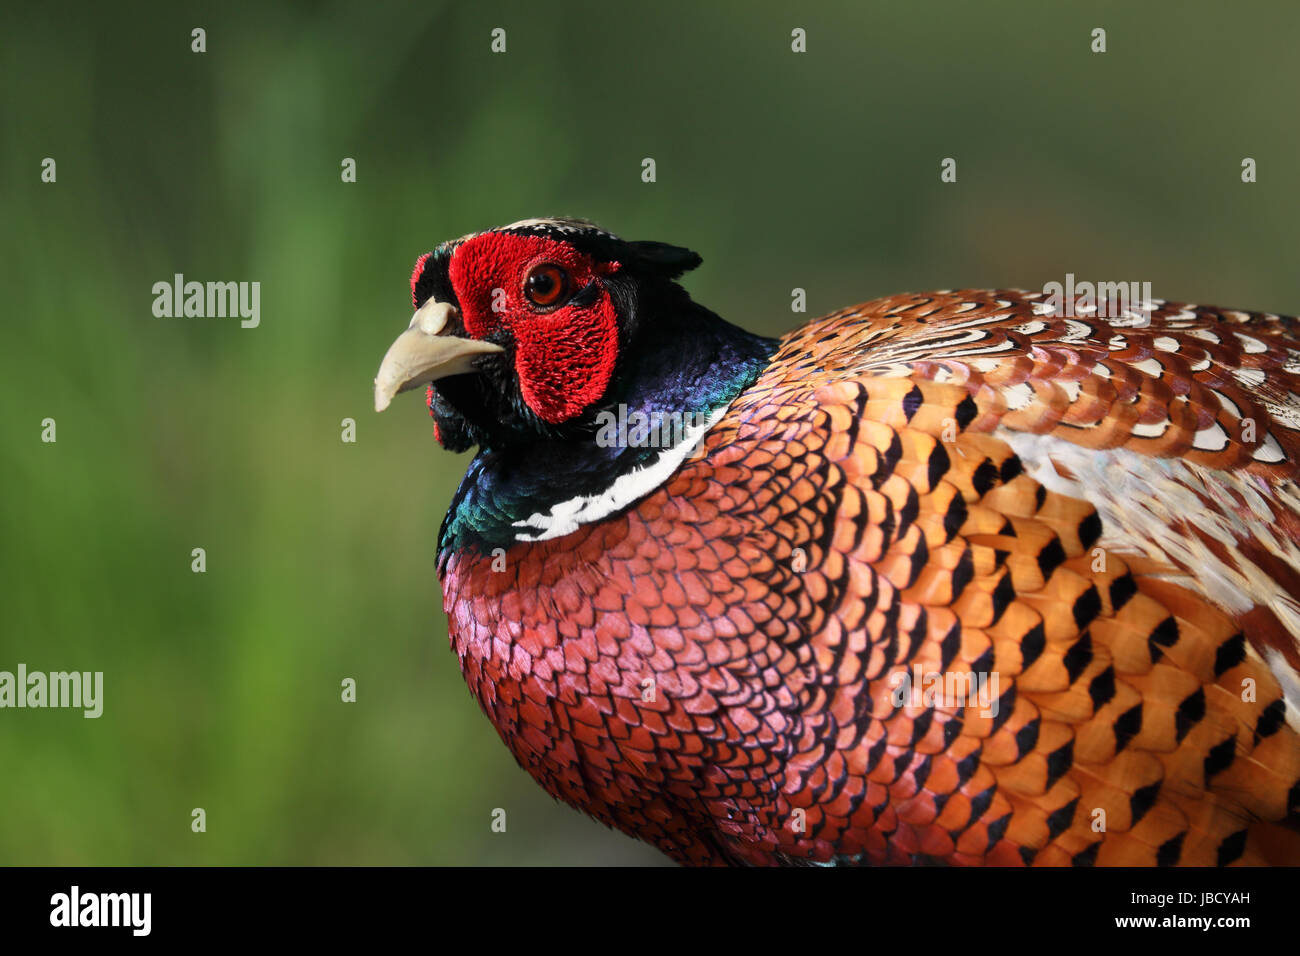 Common Pheasant (Phasianus colchicus) closeup Stock Photo